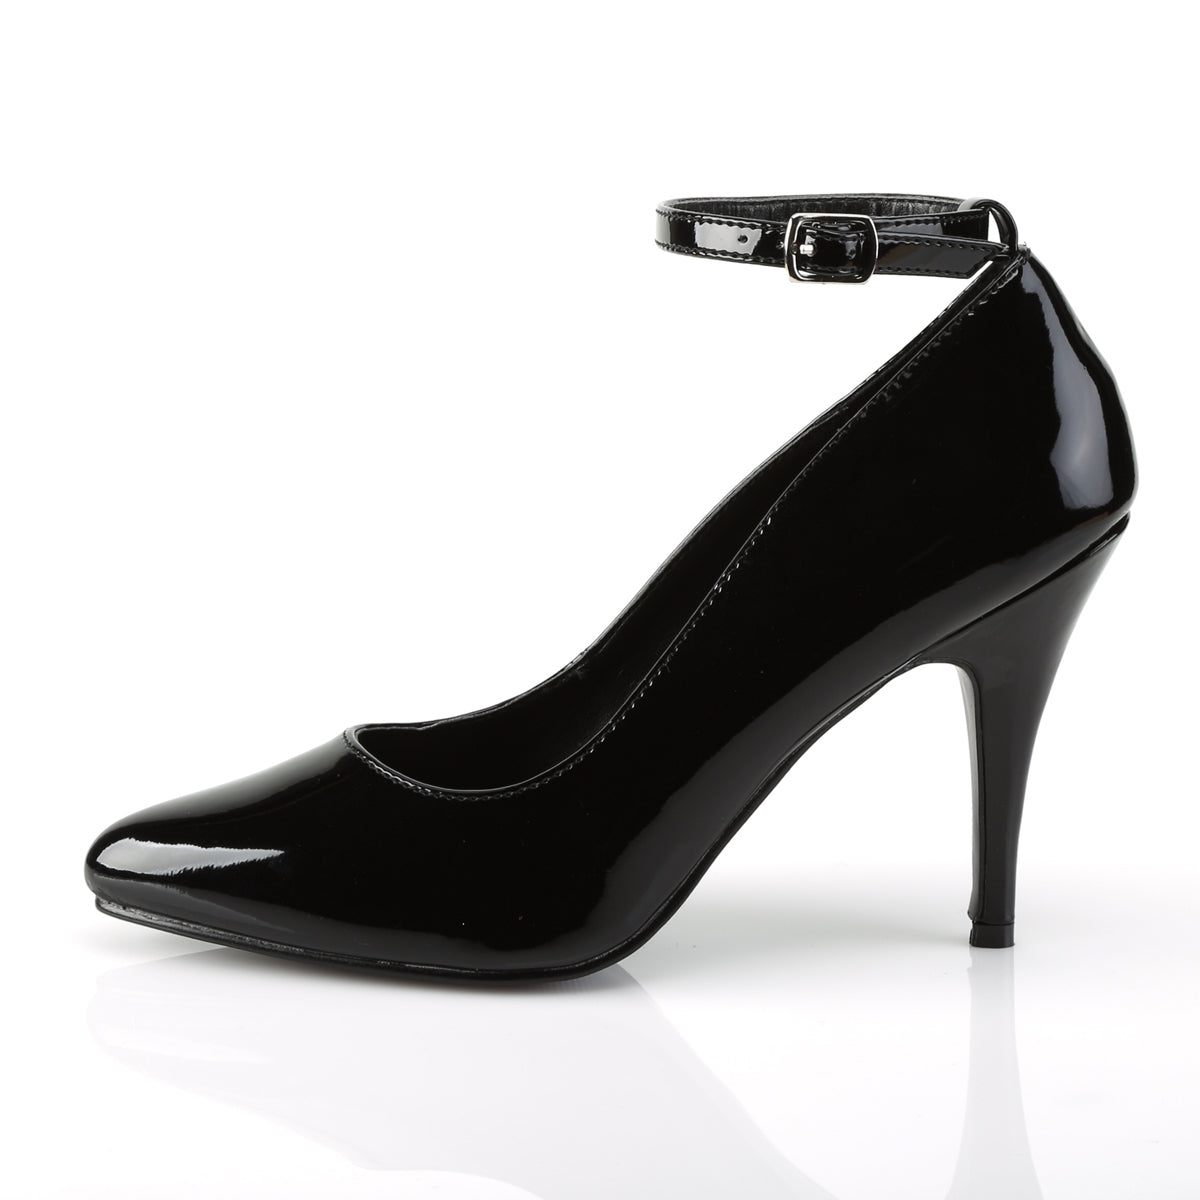 VANITY-431 Pleaser Black Patent Single Sole Shoes [Fetish Shoes]